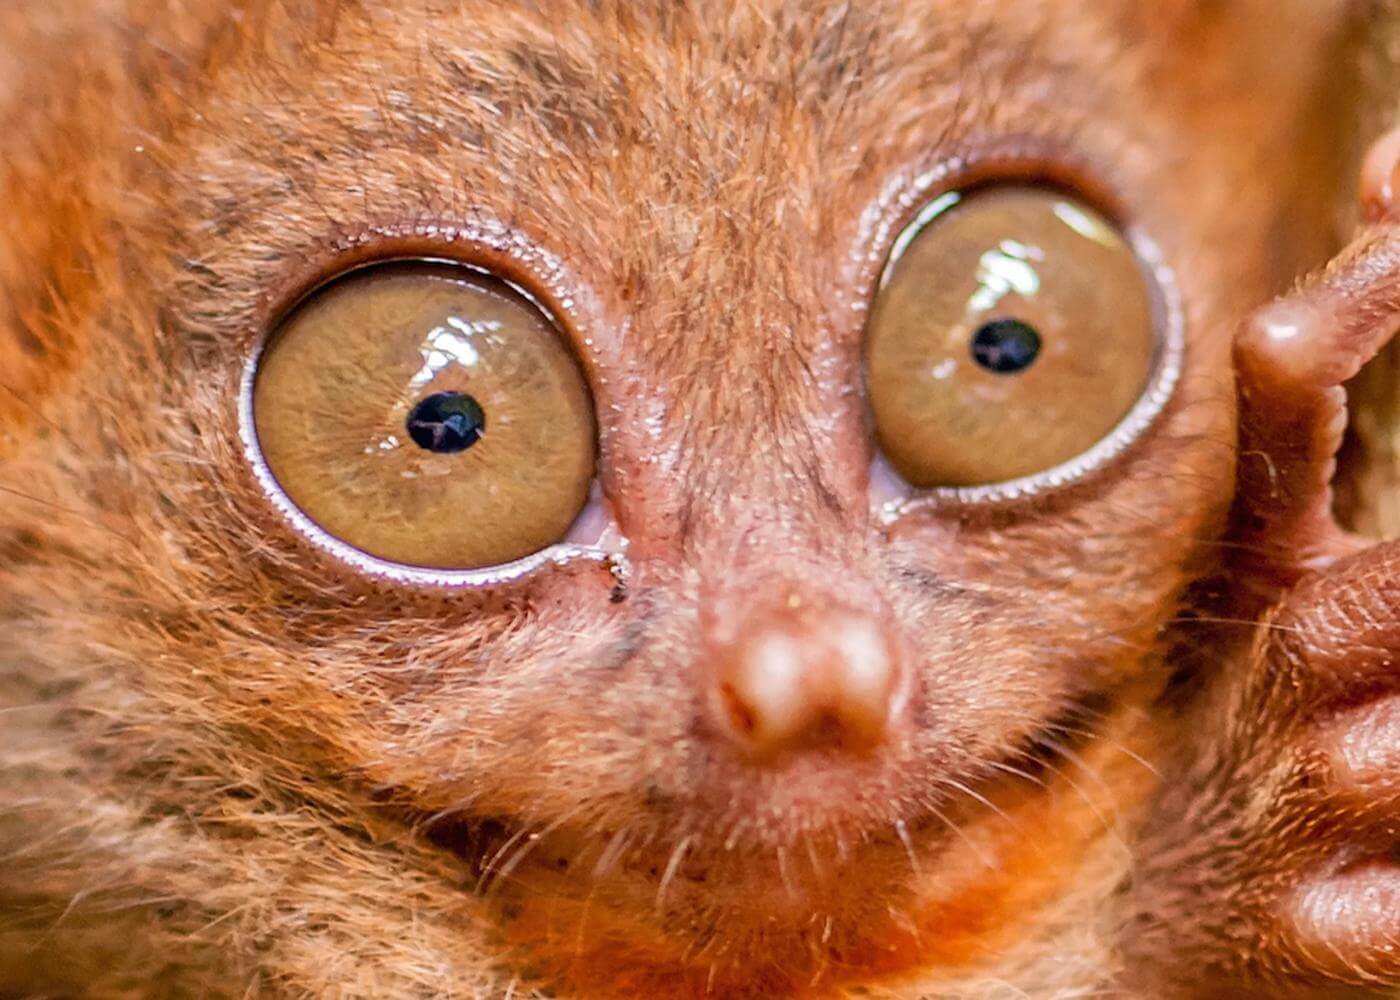 Mata tarsius begitu besar karena primata nokturnal tidak dapat melihat pada malam hari. Tidak seperti burung hantu dan kucing, primata tidak memiliki tapetum lucidum, sehingga perlu mata yang besar untuk melihat dalam gelap.